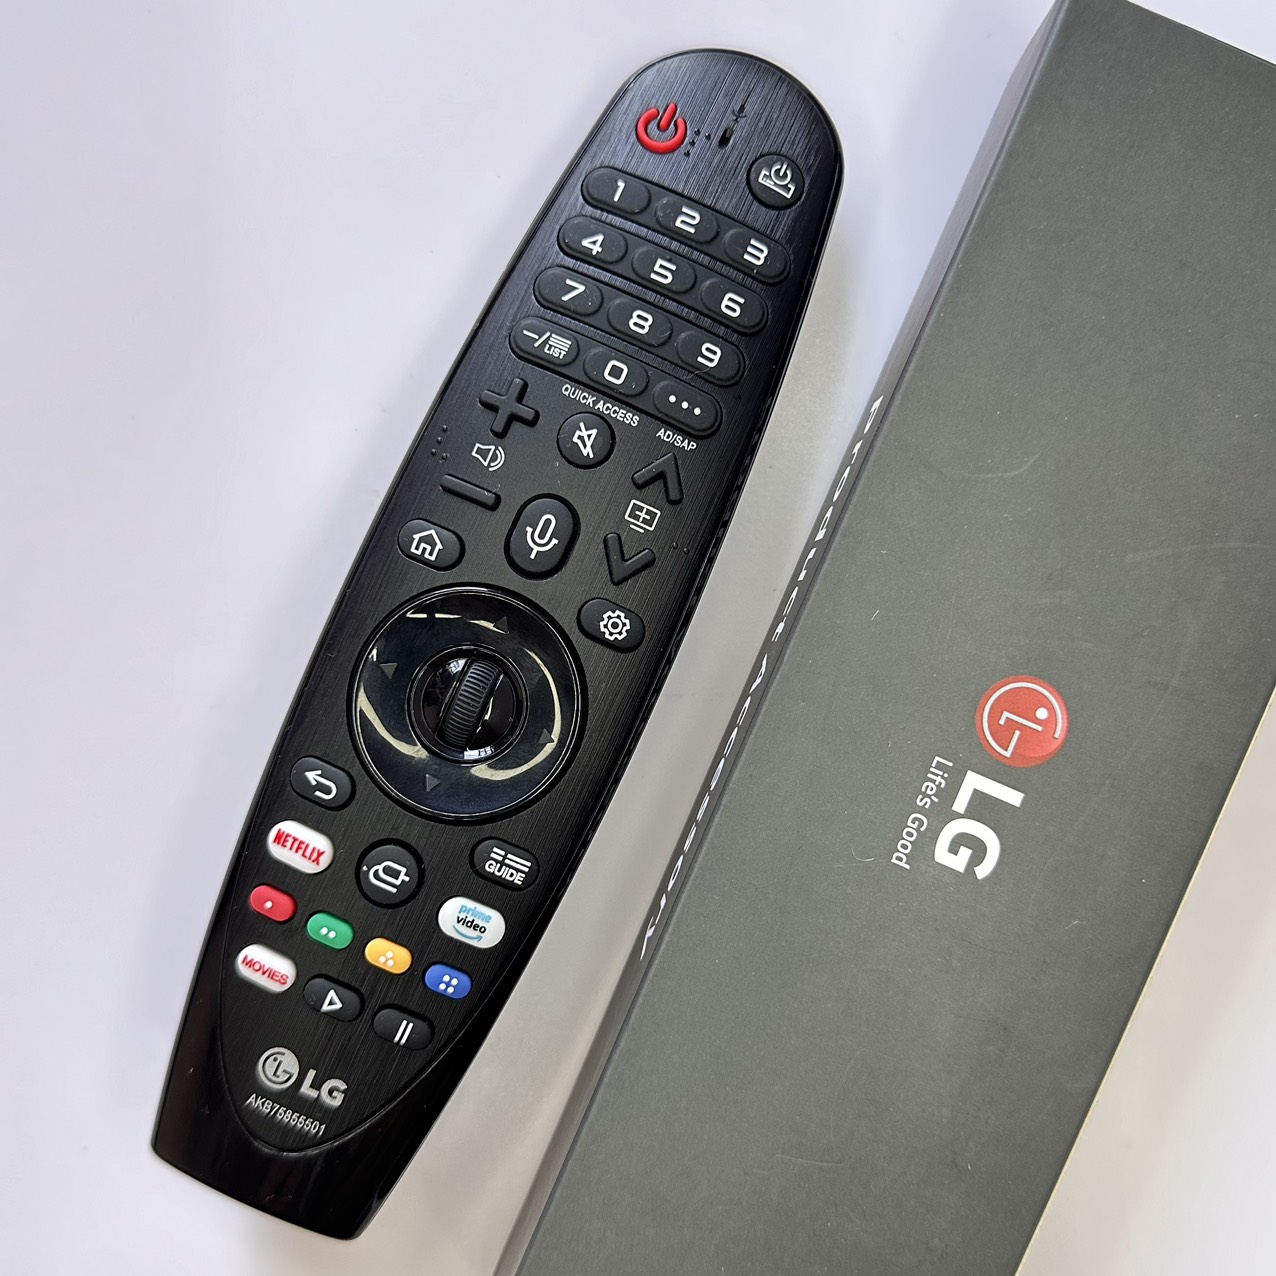 Magic Remote LG Điều khiển cho TV Smart LG các đời từ 2018 đến nay của LG Smart TV model MR20GA [TẶNG PIN]